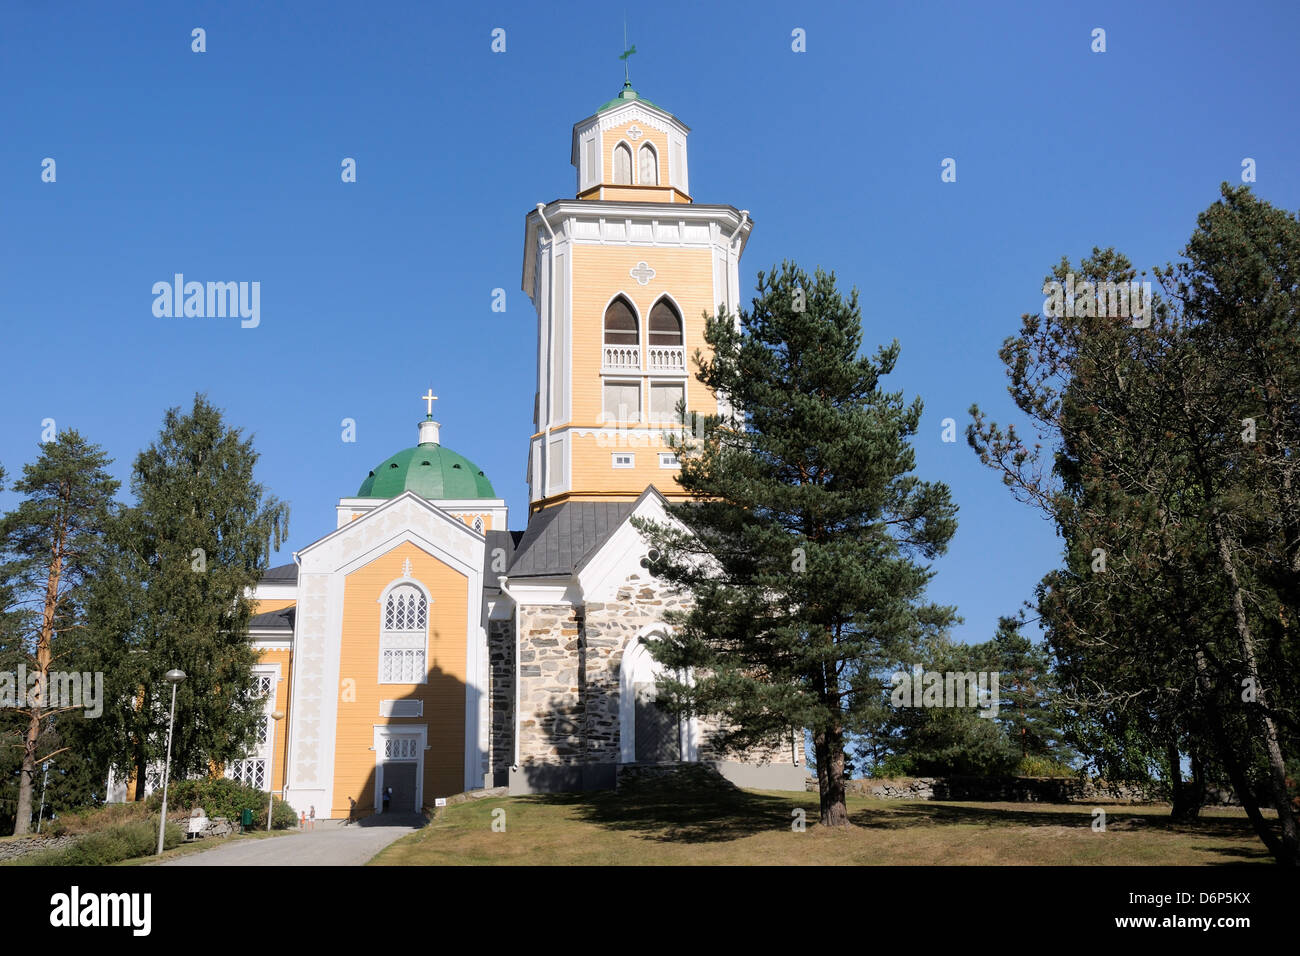 Kerimaki church, la plus grande église en bois du monde, près de Savonlinna, Finlande, Scandinavie Banque D'Images